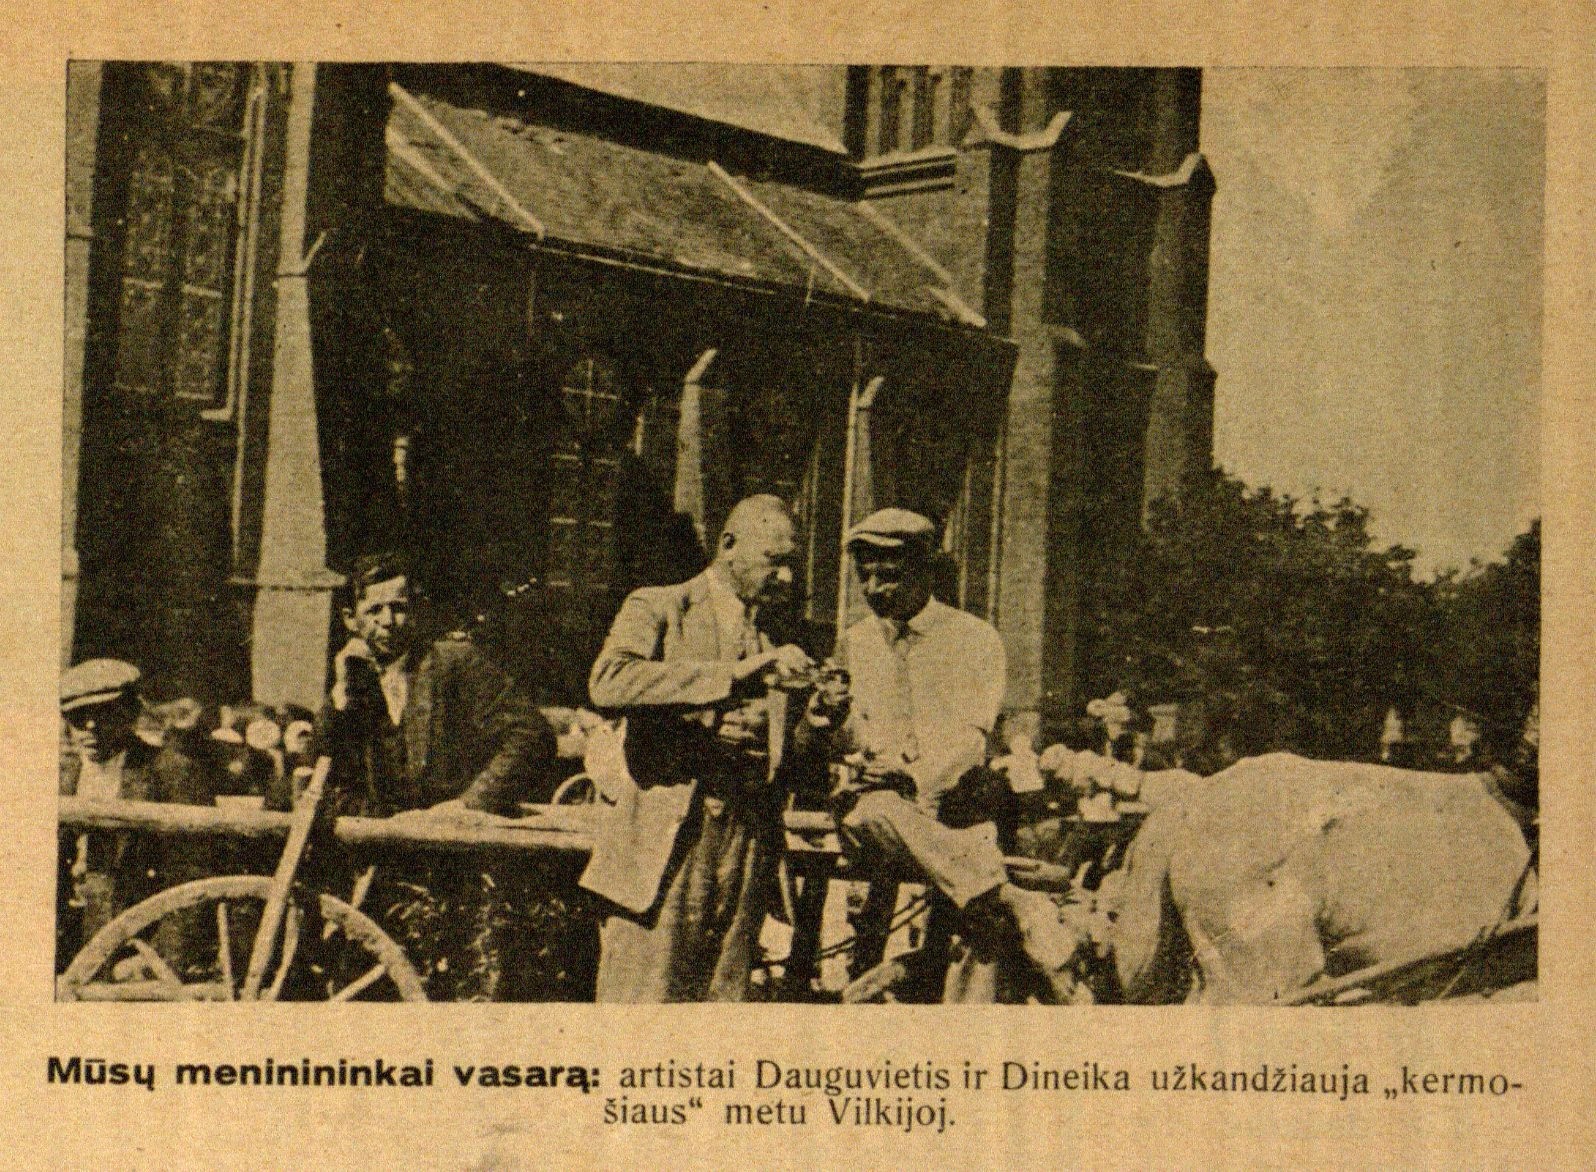 Mūsų menininkai vasarą: artistai Dauguvietis ir Dineika užkandžiauja „kermošiaus“ metu Vilkijoj // Naujas žodis. – 1928, Nr. 14, p. 11.